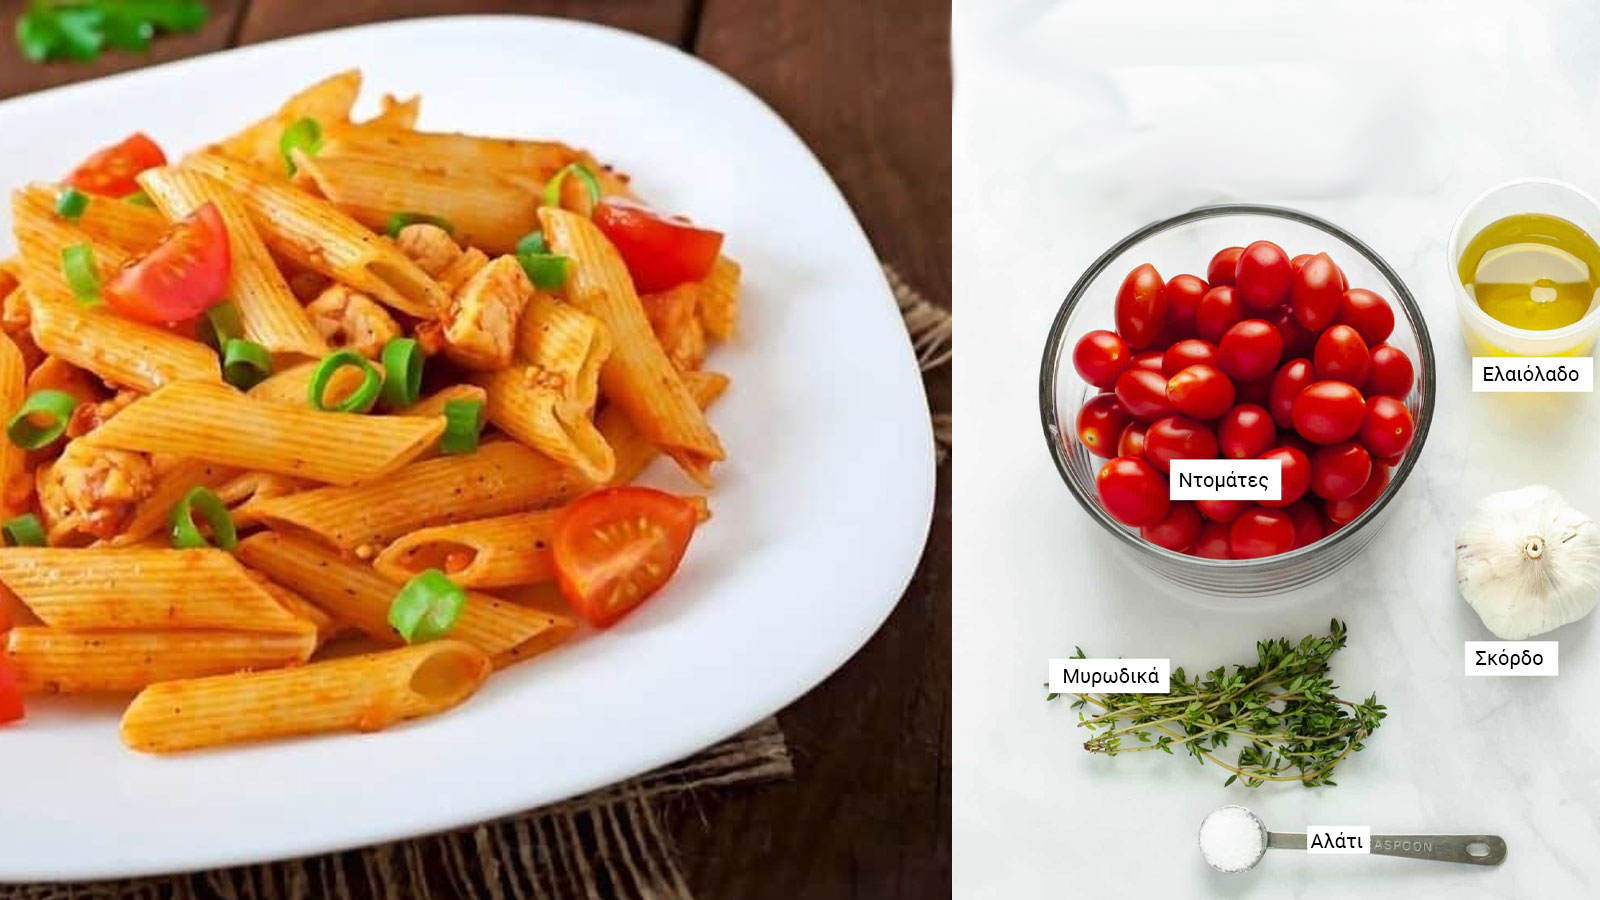 Μόνο Με Τρία Υλικά: Φτιάξε Θεικές Πέννες με Σκόρδο, Ντομάτα και Ελαιόλαδο – Ιδανική Συνταγή και Για παιδιά